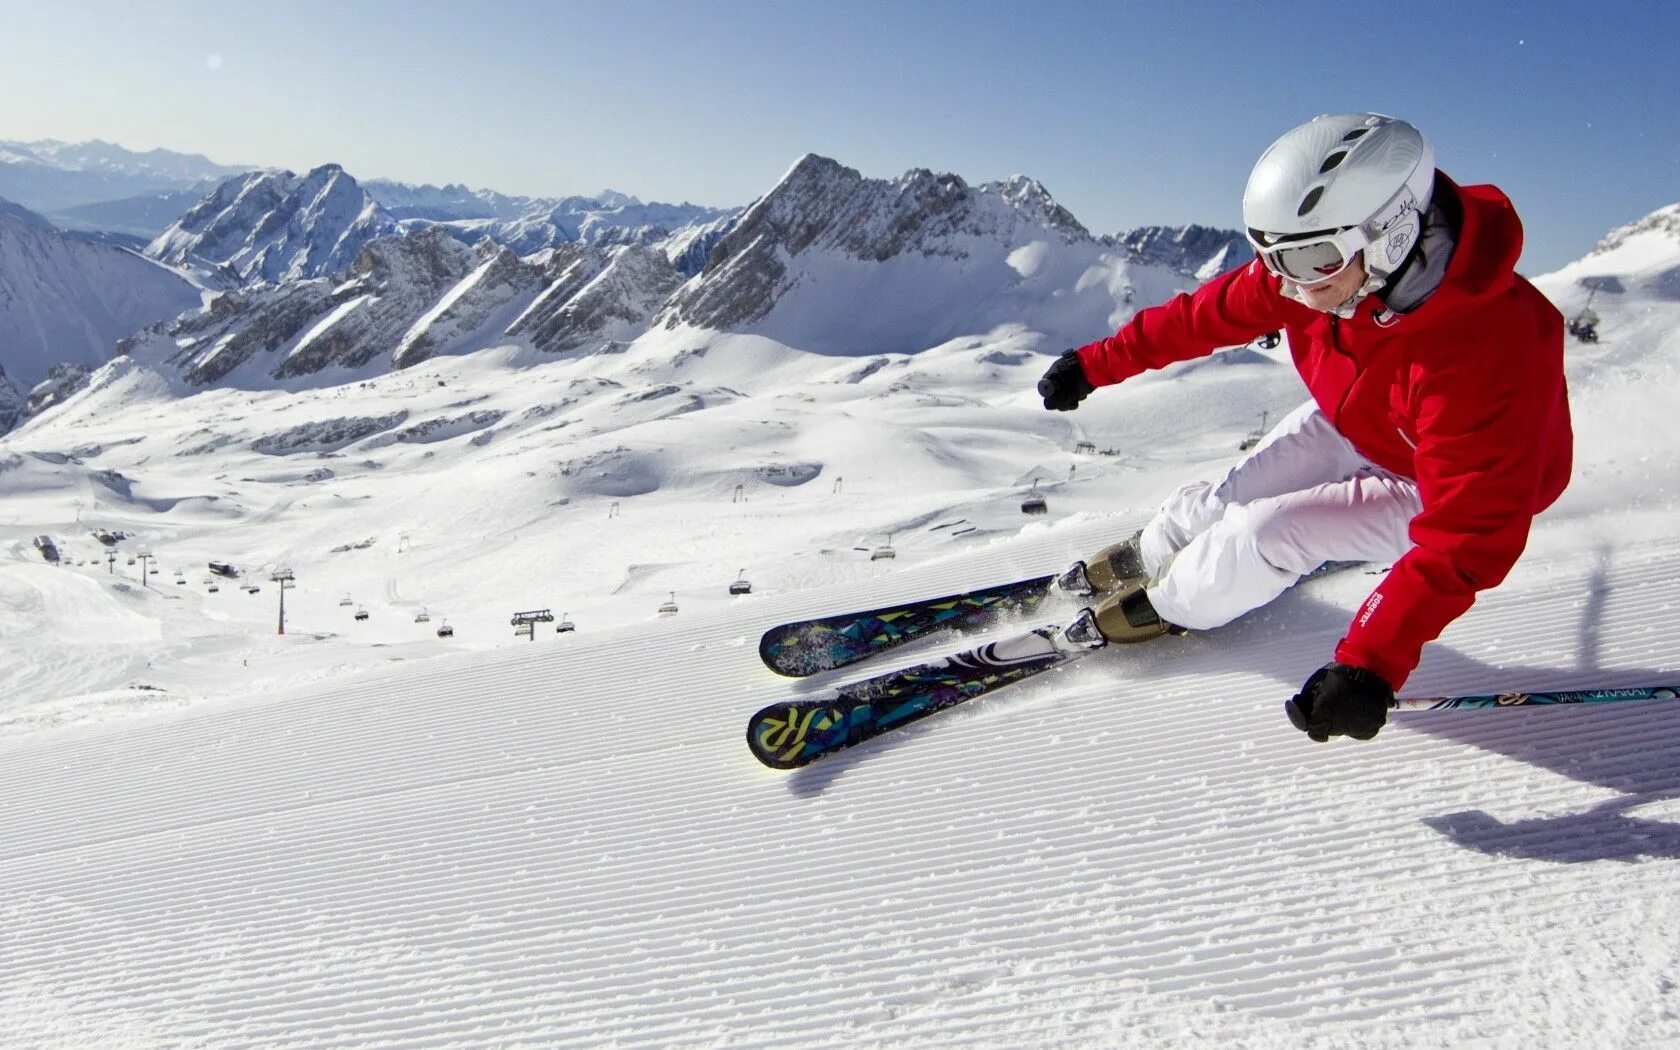 Горные лыжи к2 олмаунтин. Карвинговые горные лыжи. Катание на горных лыжах. Зимний спорт. Фото skiing